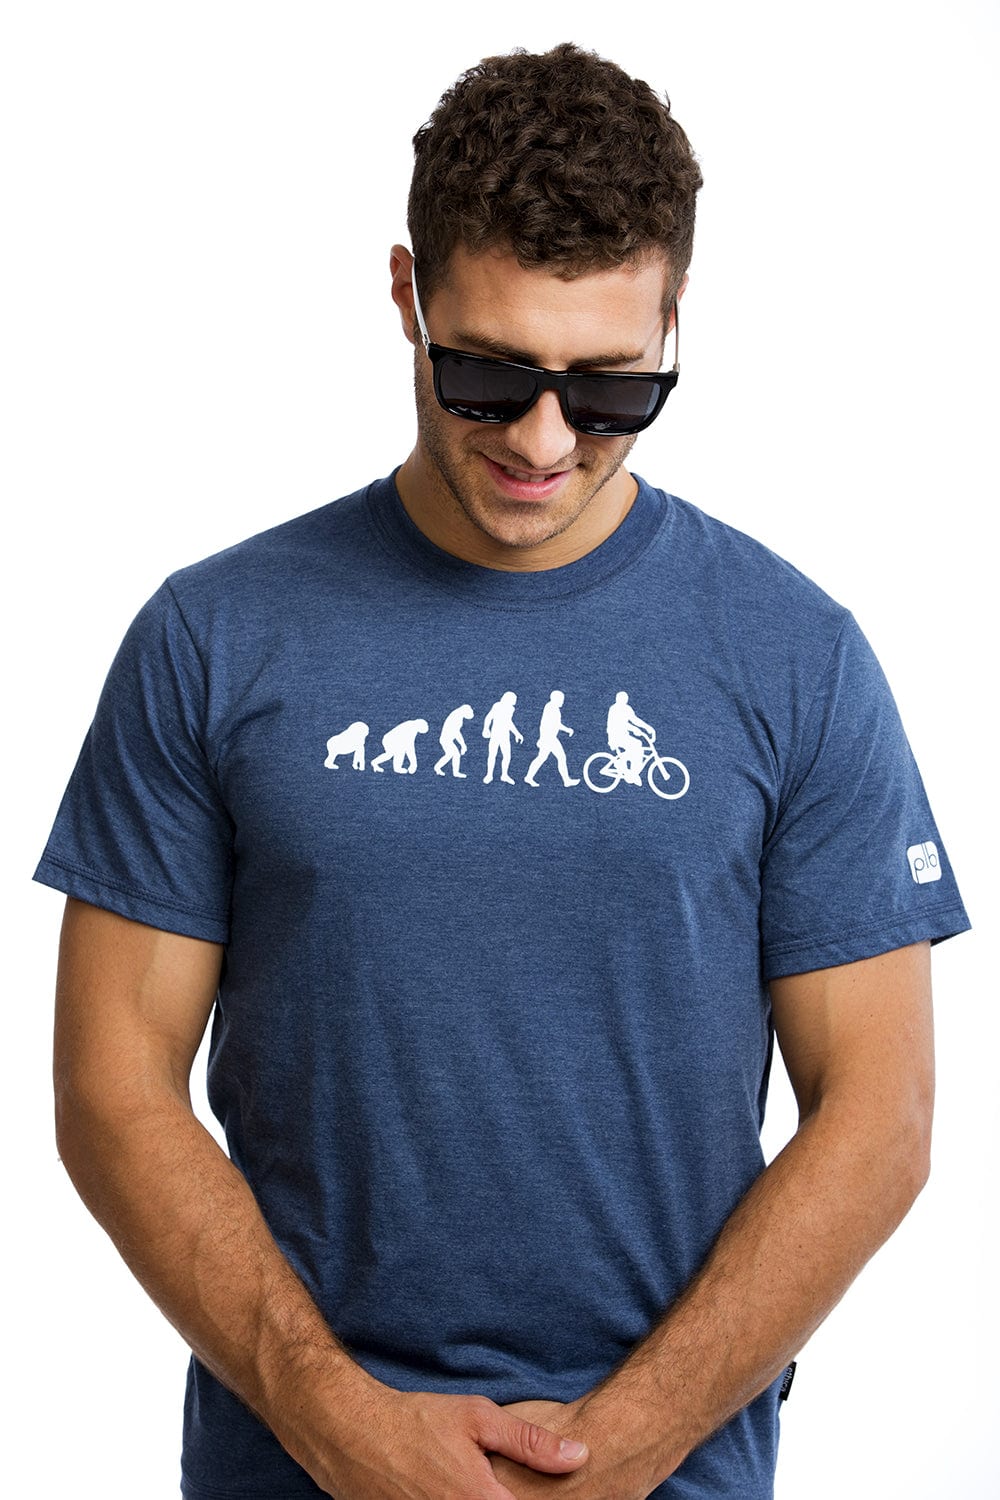 T-shirt pour homme - Évolution par Plb Design vendu par SignéLocal.com